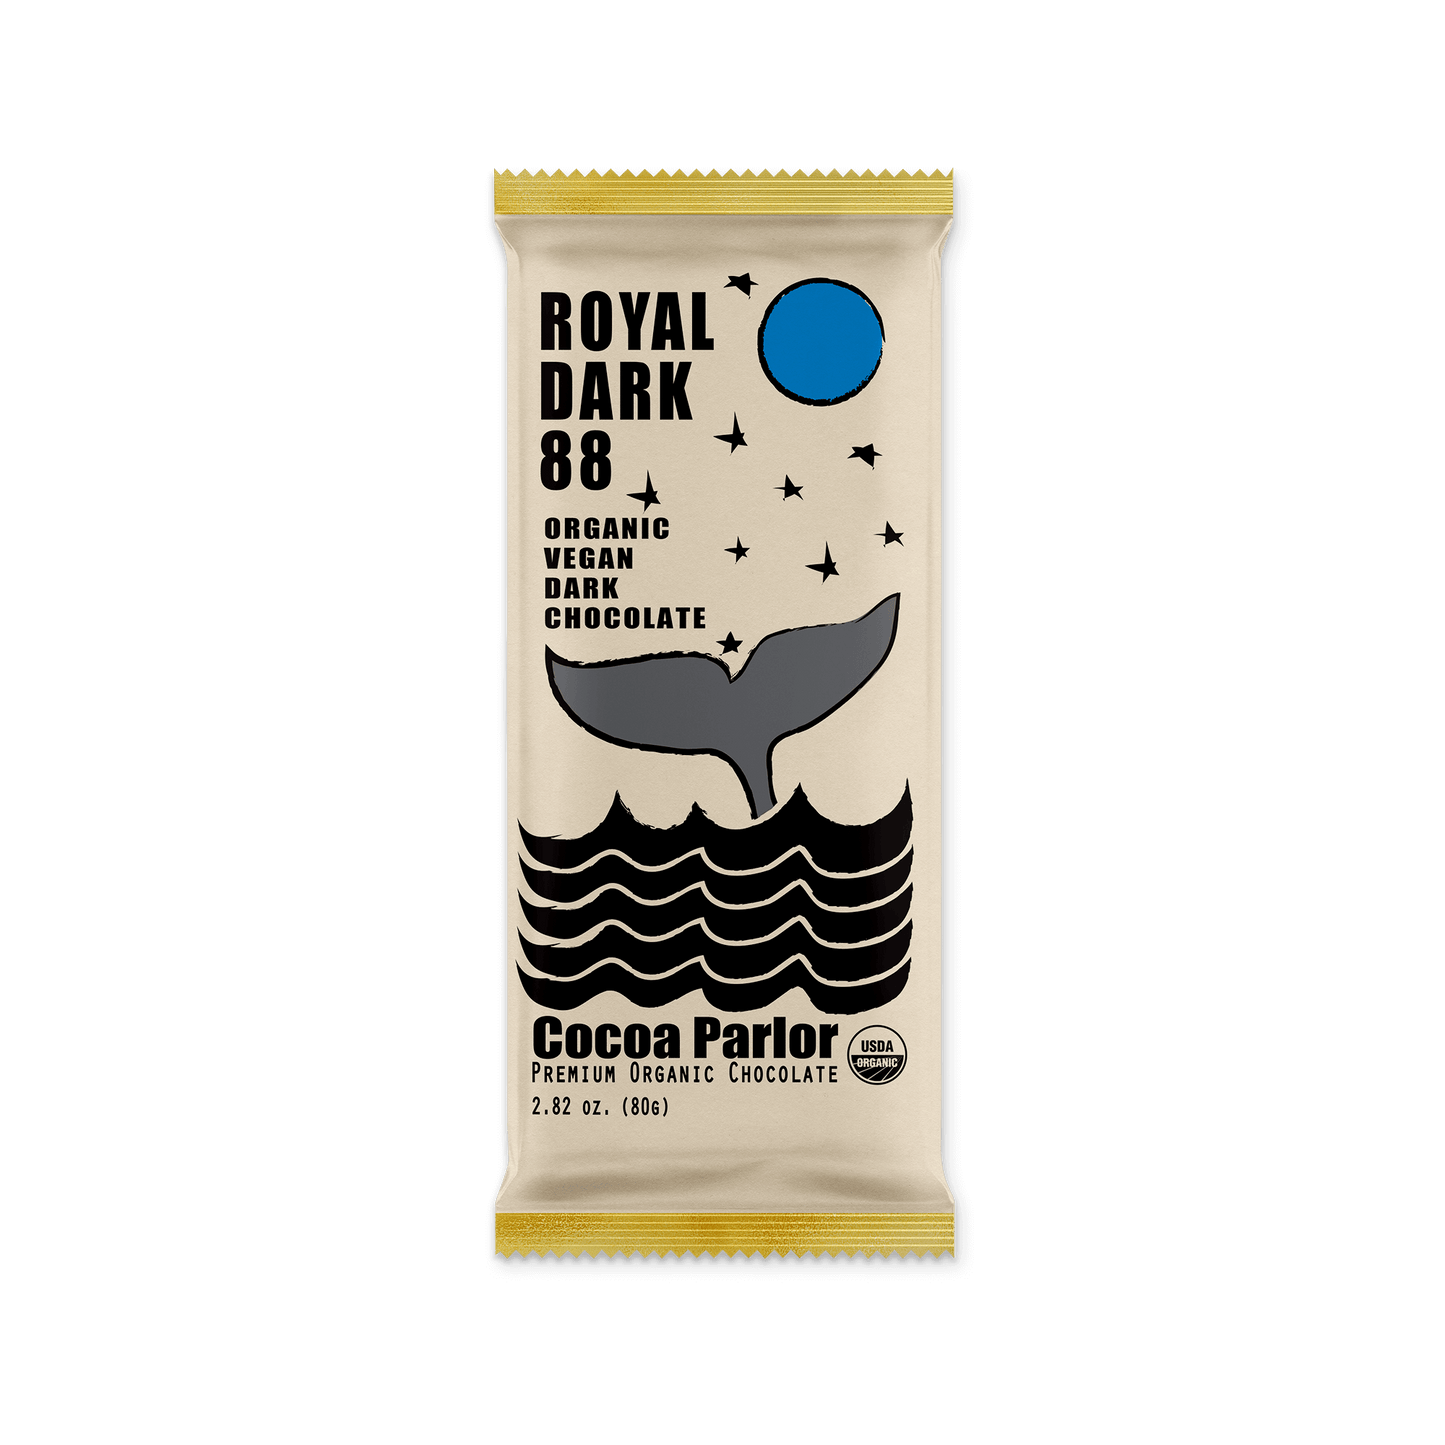 Cocoa Parlor Royal Dark 88